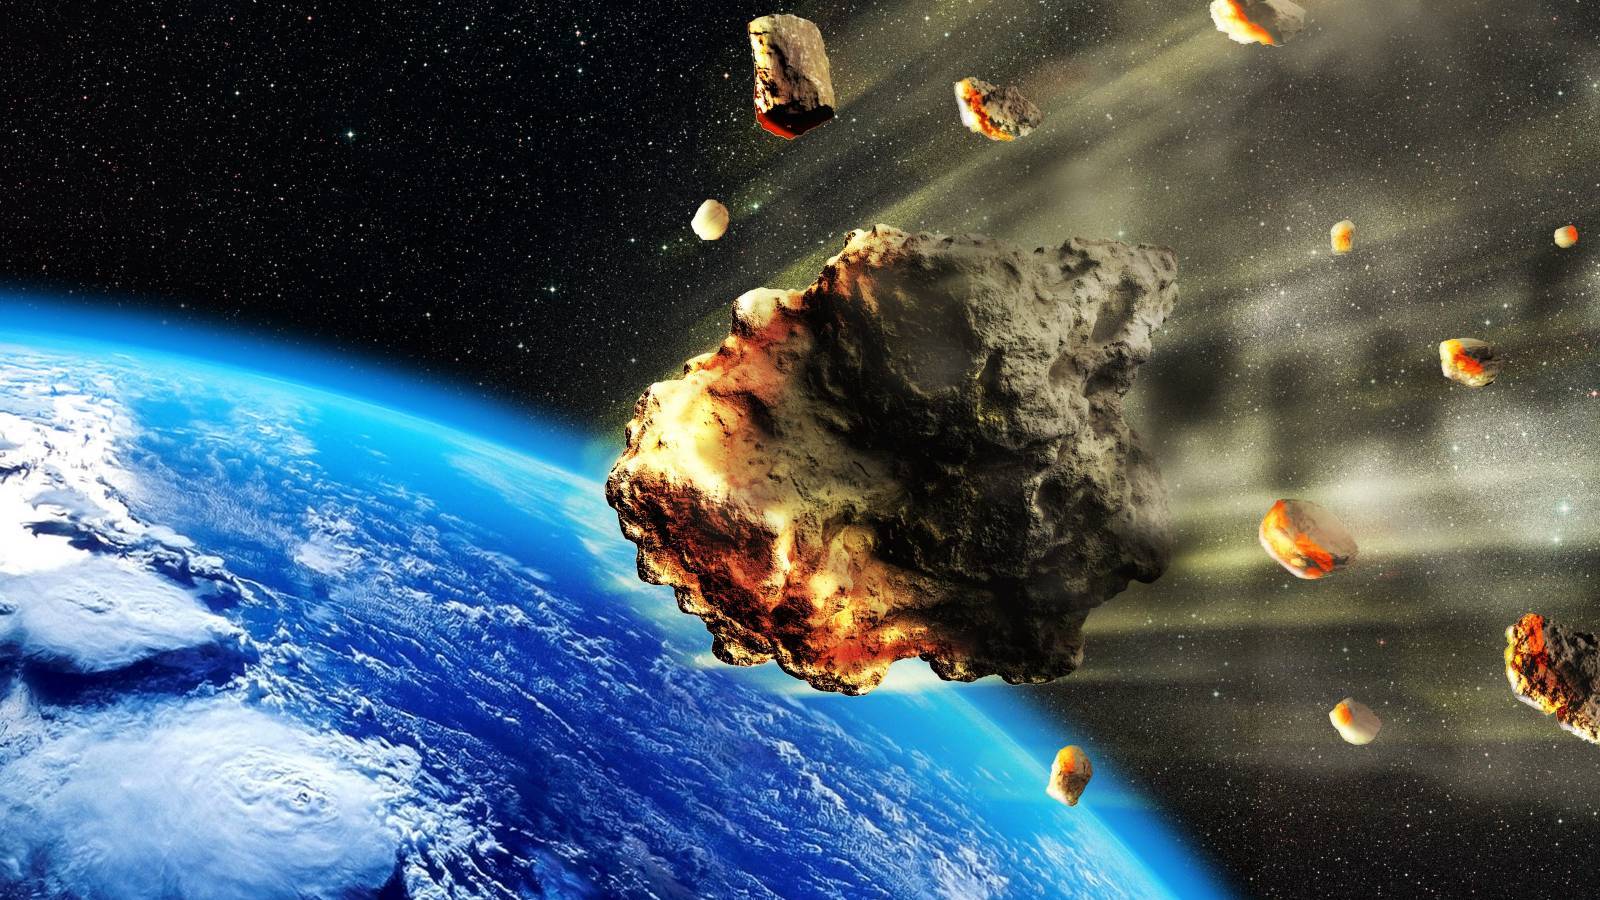 asteroide destruido nasa